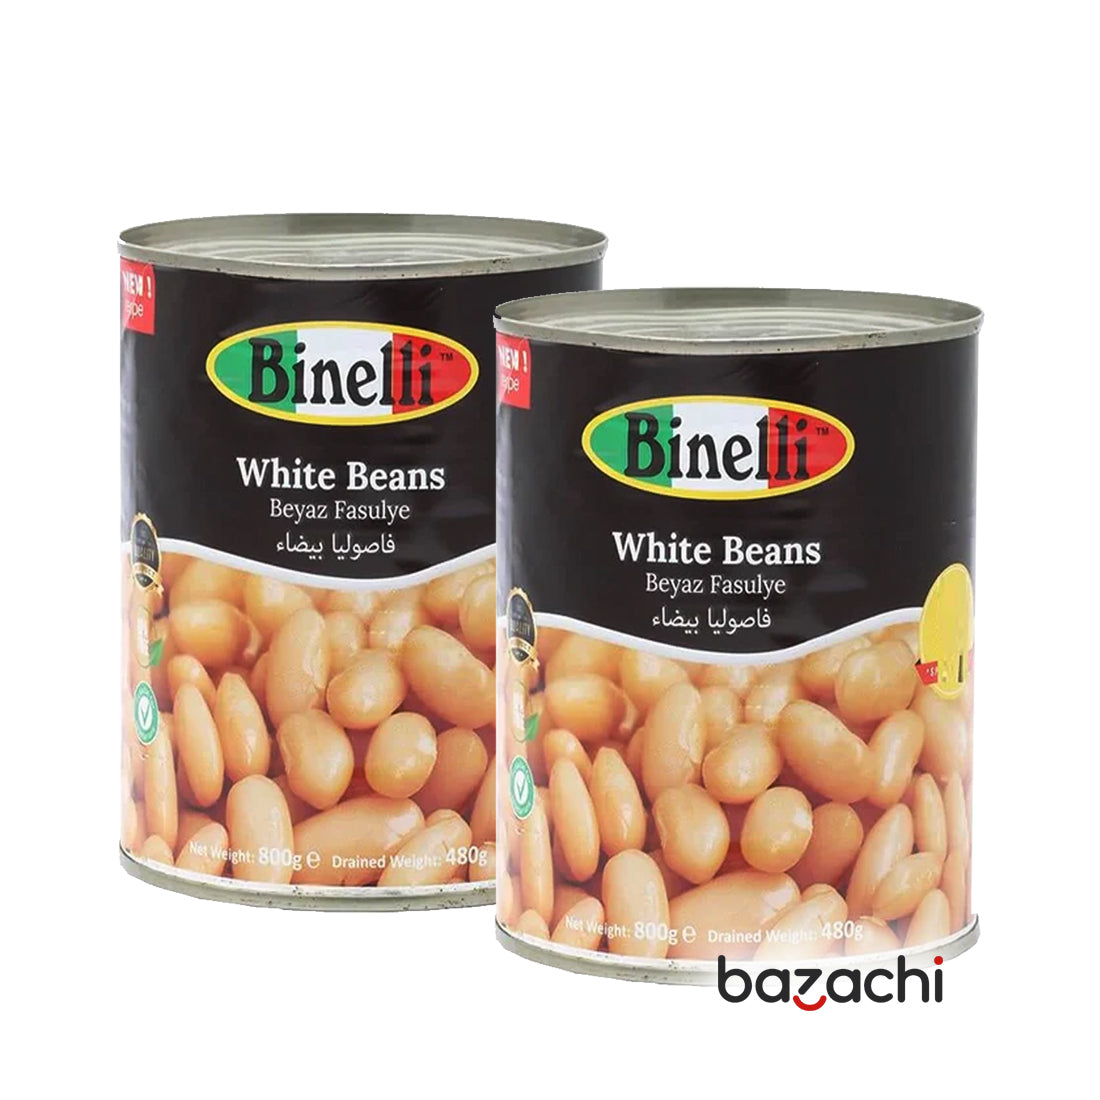 Binelli White Beans (400G) Beyaz Fasulye